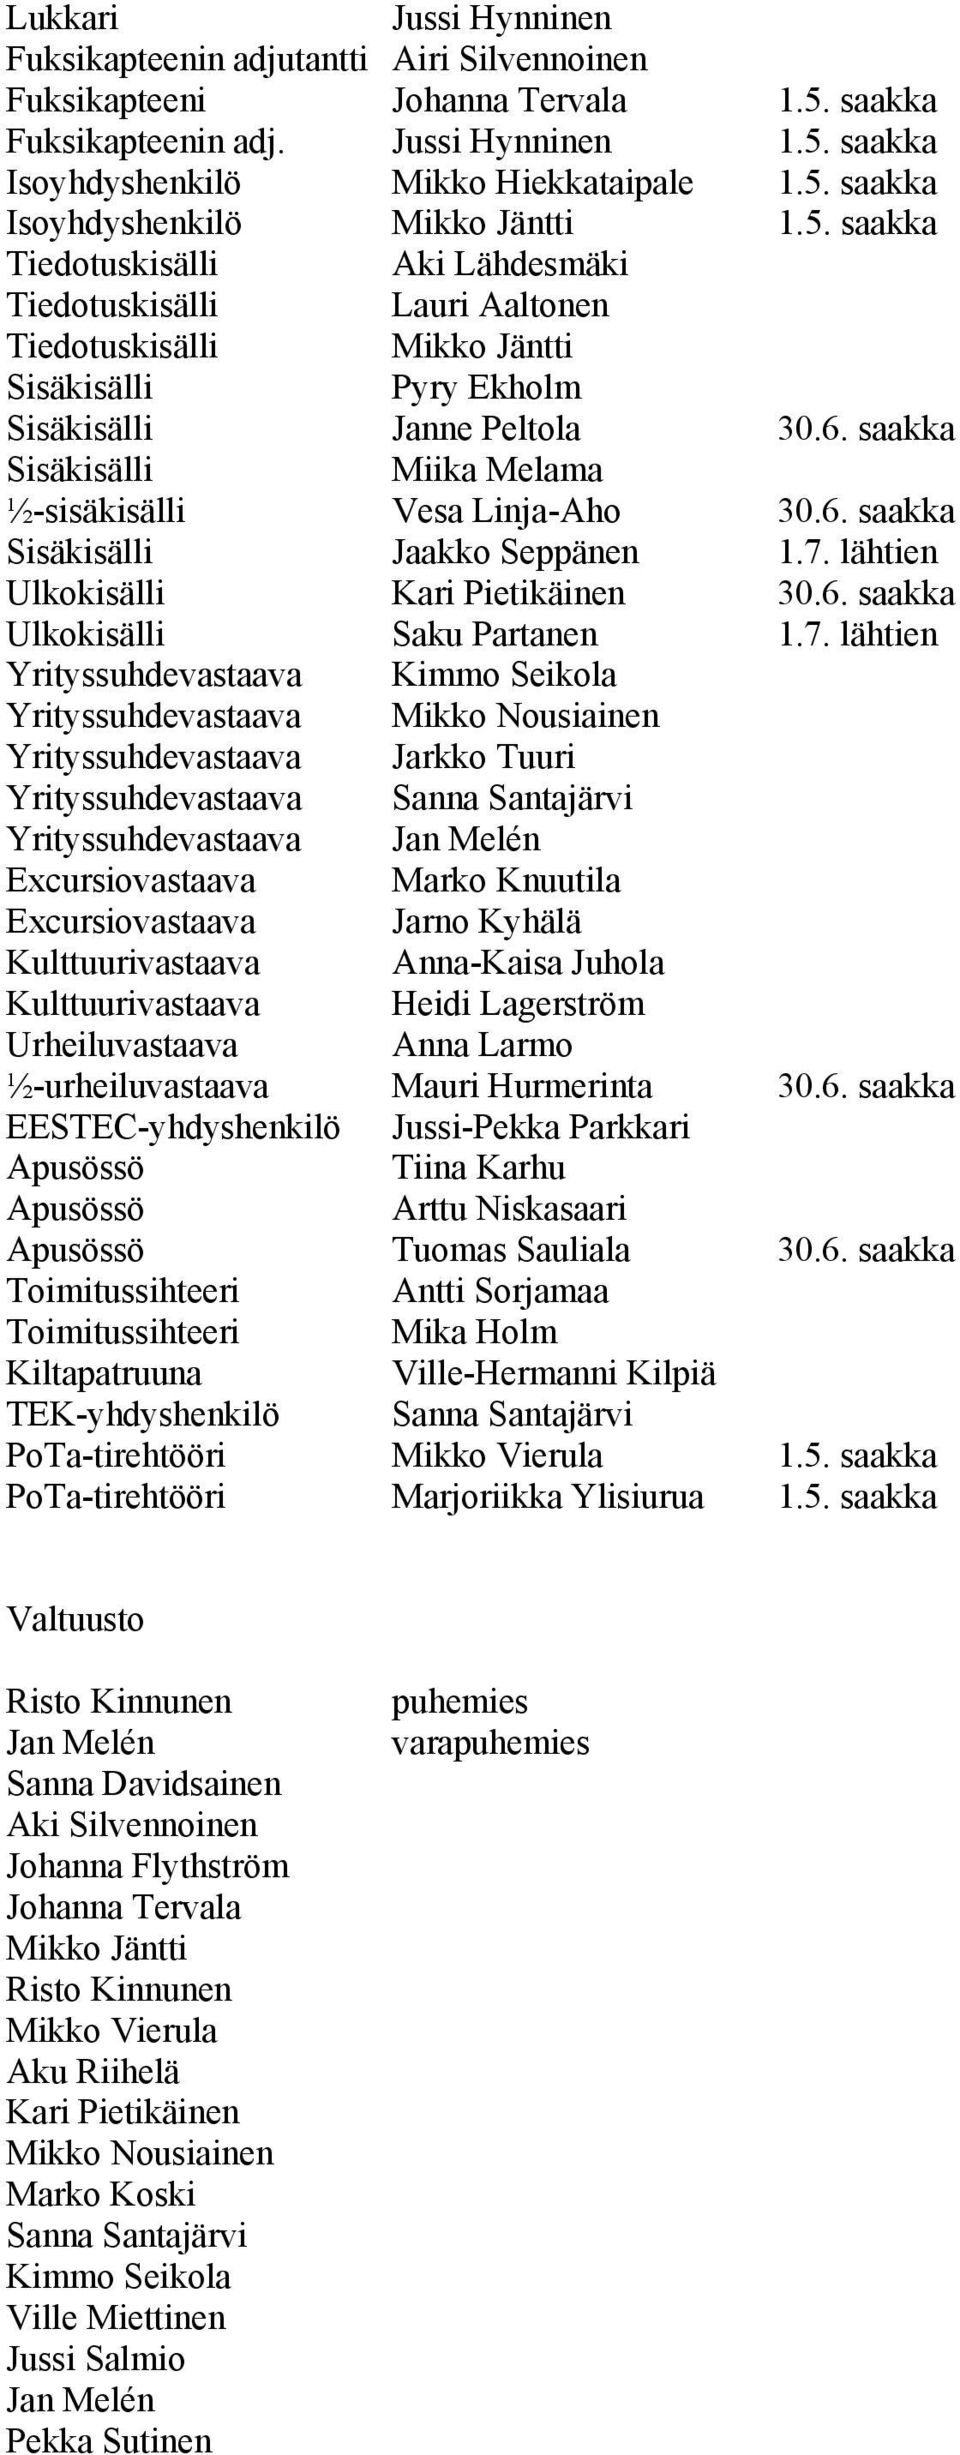 saakka Sisäkisälli Miika Melama ½-sisäkisälli Vesa Linja-Aho 30.6. saakka Sisäkisälli Jaakko Seppänen 1.7.